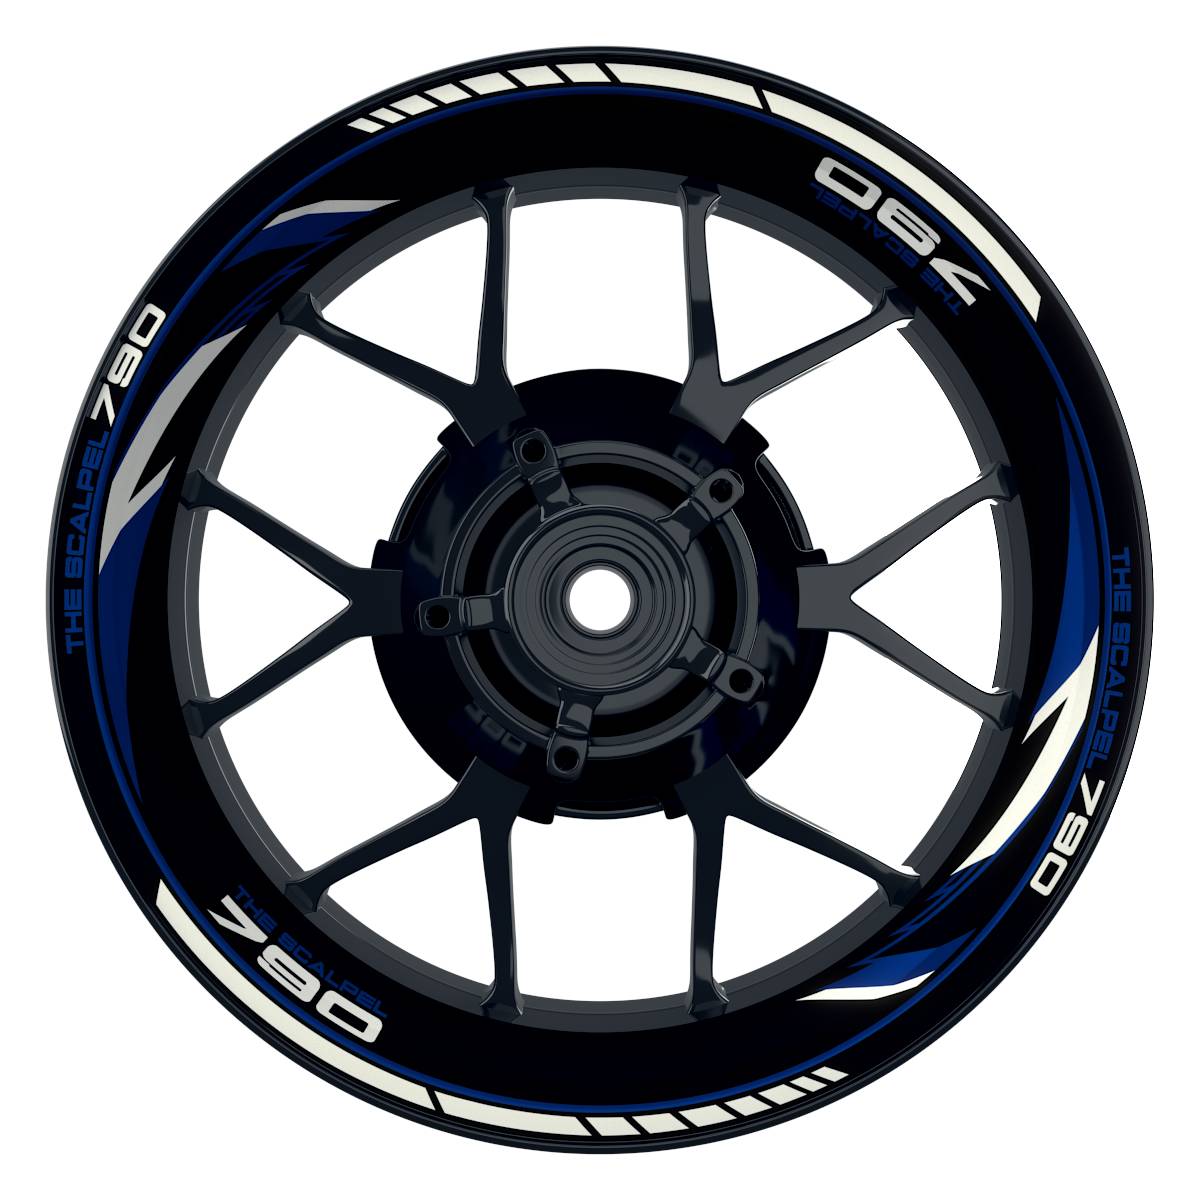 THE SCALPEL 790 Razor schwarz blau Wheelsticker Felgenaufkleber